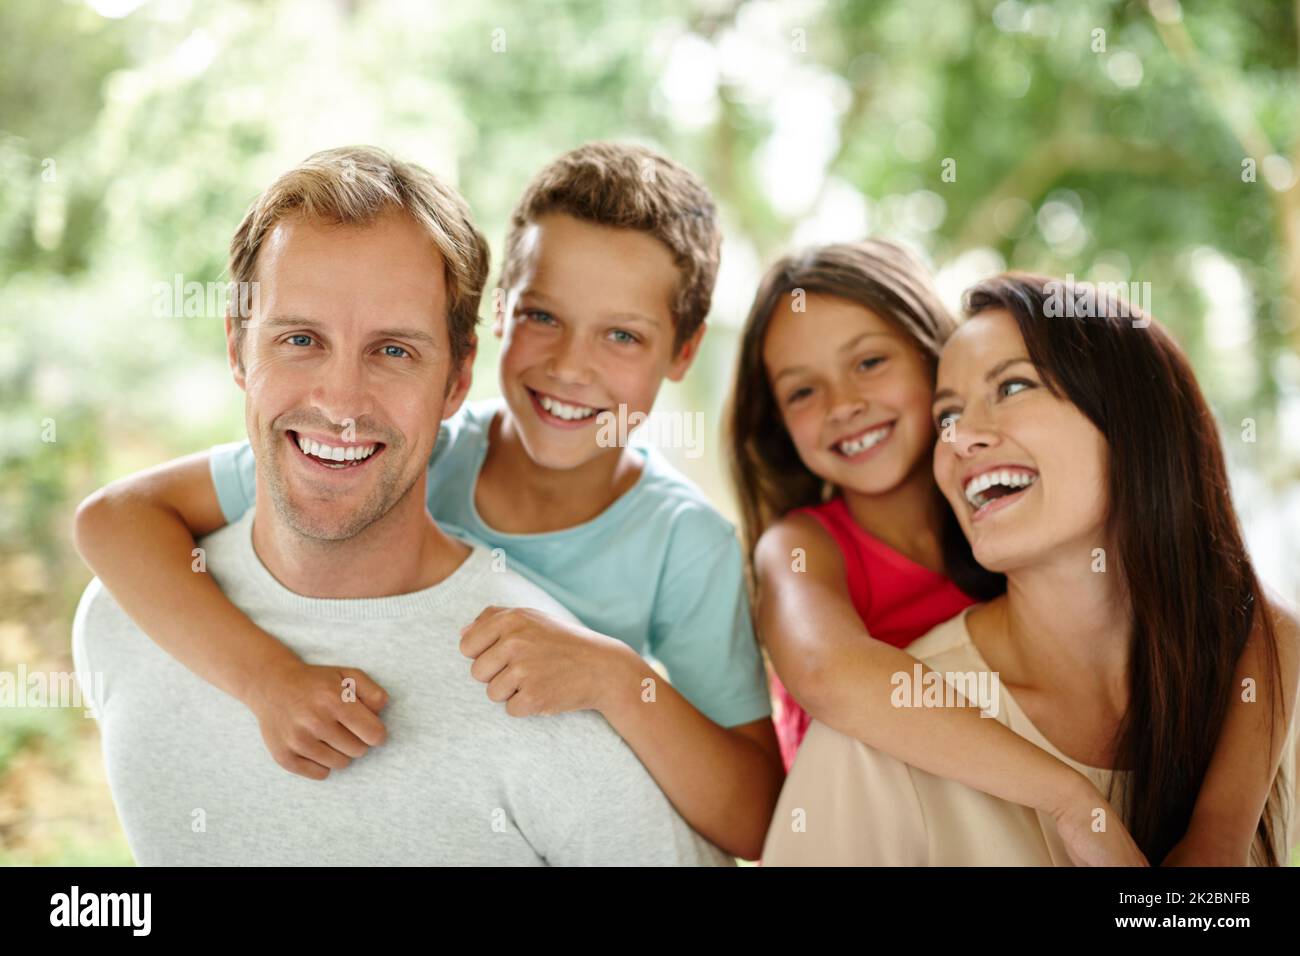 Gemeinsam schöne Erinnerungen sammeln. Porträt einer glücklichen vierköpfigen Familie, die Zeit im Freien verbringt. Stockfoto